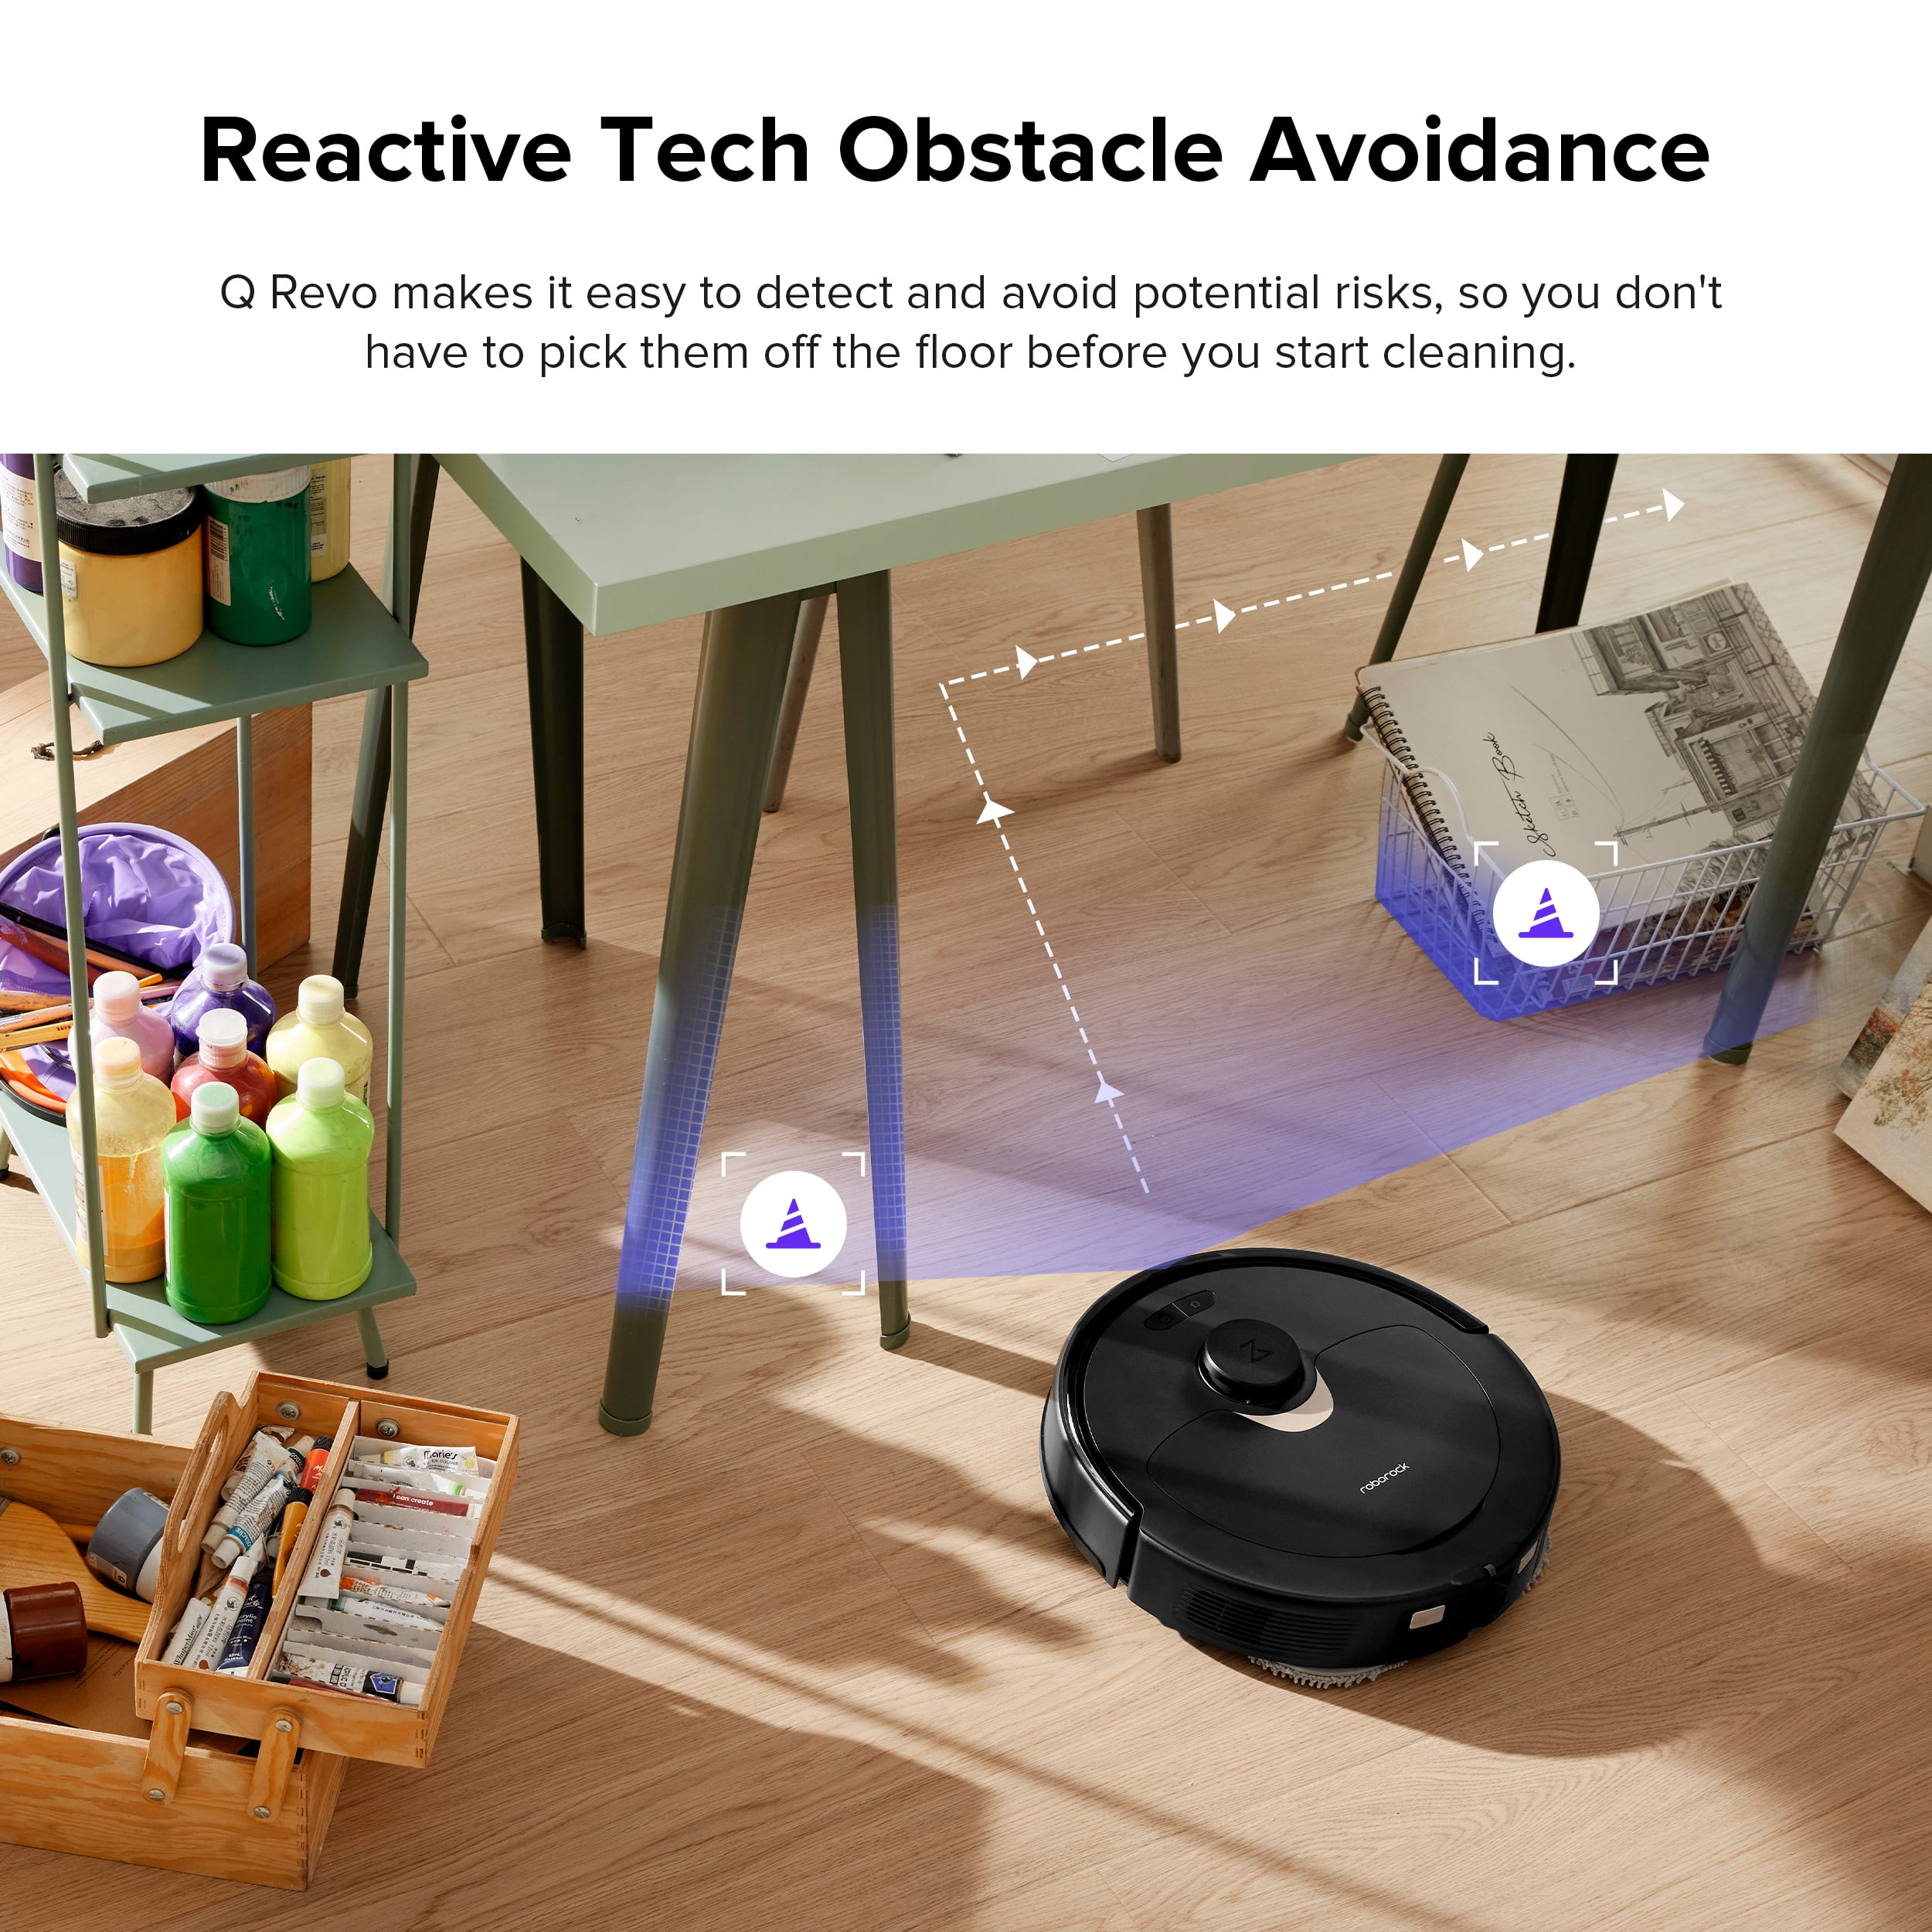 The BEST Everyday Robot Vacuum – Roborock Q Revo 